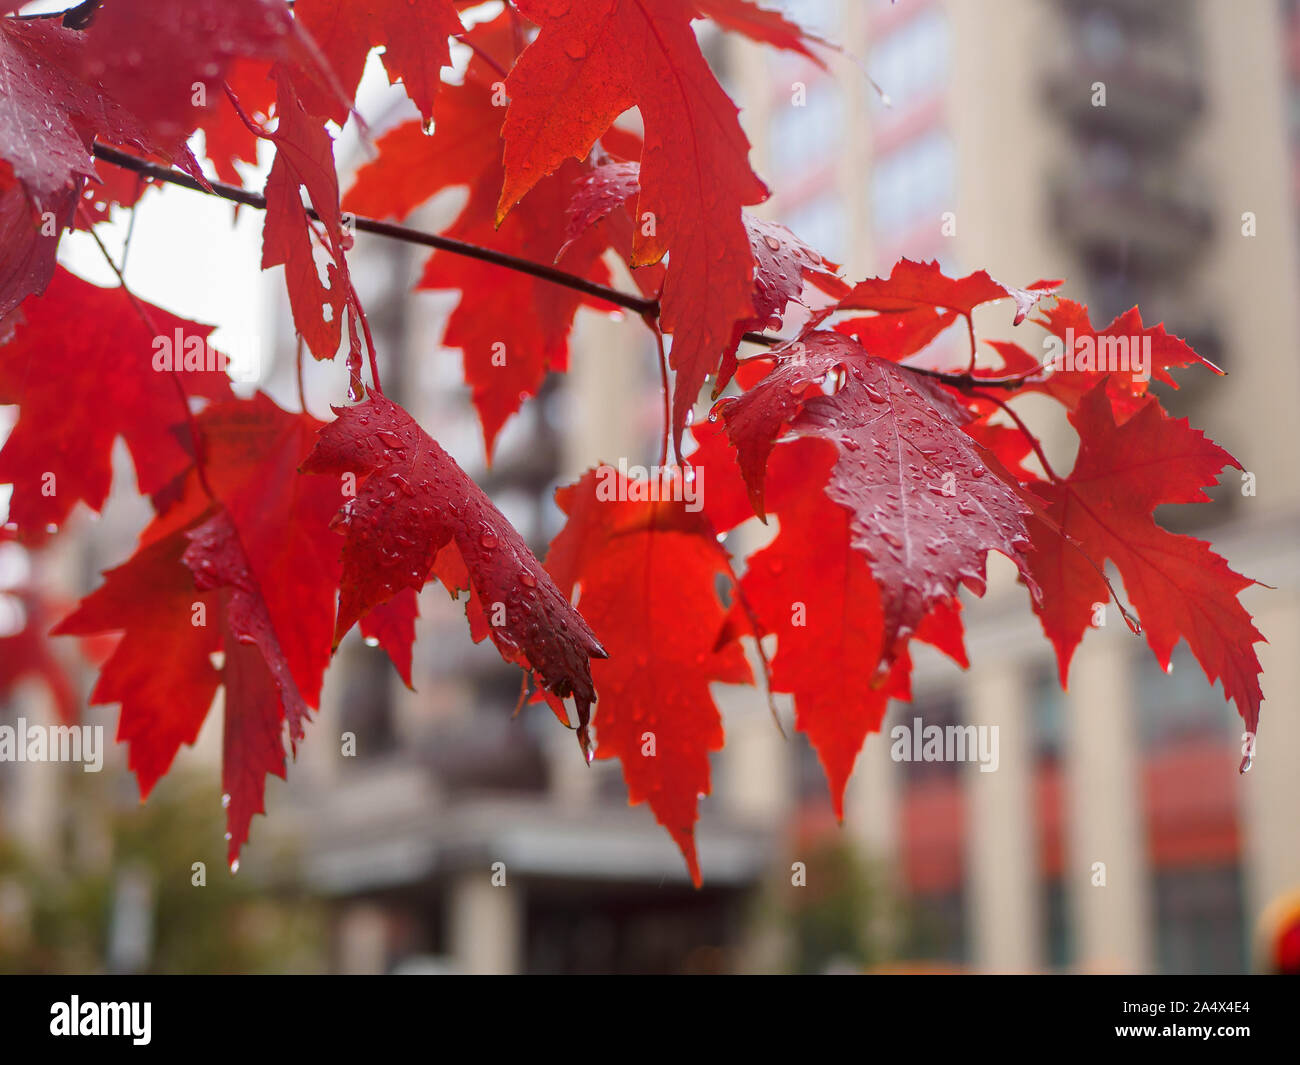 Schöne rote Blätter von Sugar maple tree branch vor Gebäude Eingang in Bokeh. Tropfen regen Wasser fallen die Blätter an einem bewölkten Tag. Stockfoto